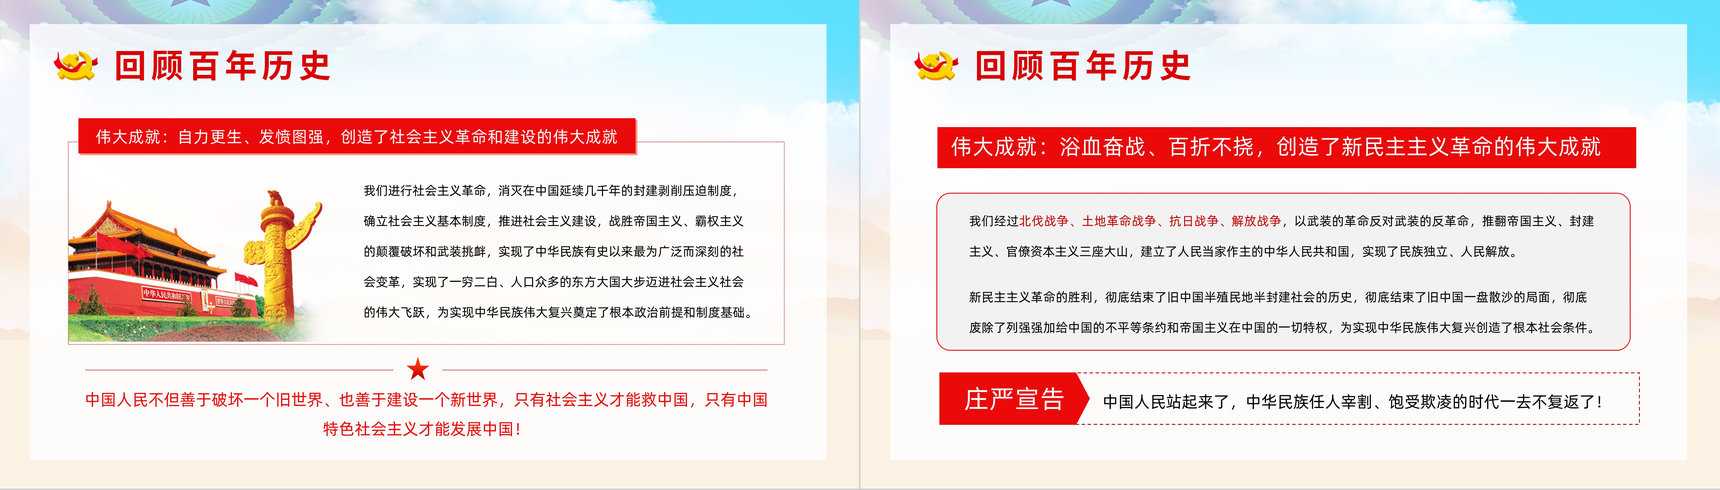 中国共产党百年辉煌宣传建党一百周年大会讲话精神解读学习动员大会PPT模板-4